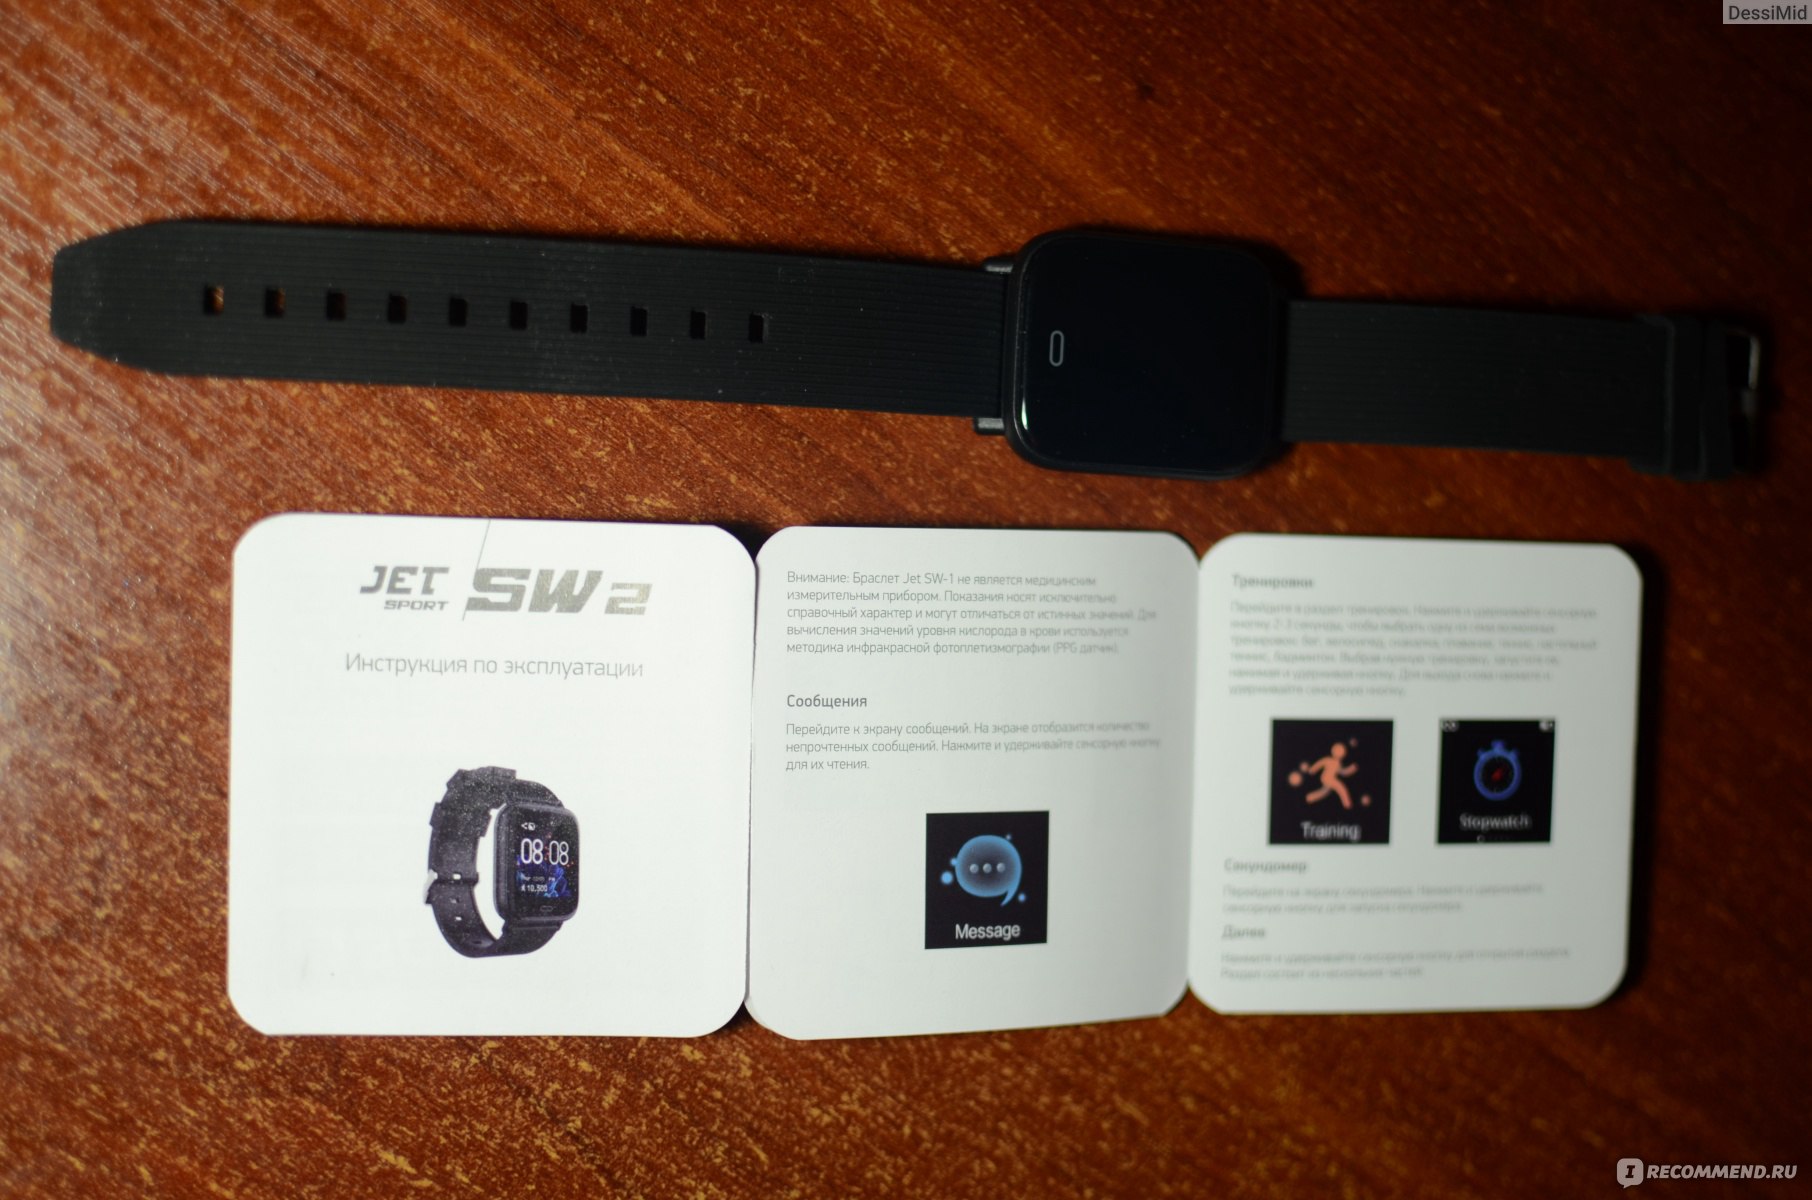 Часы jet sport sw 4c